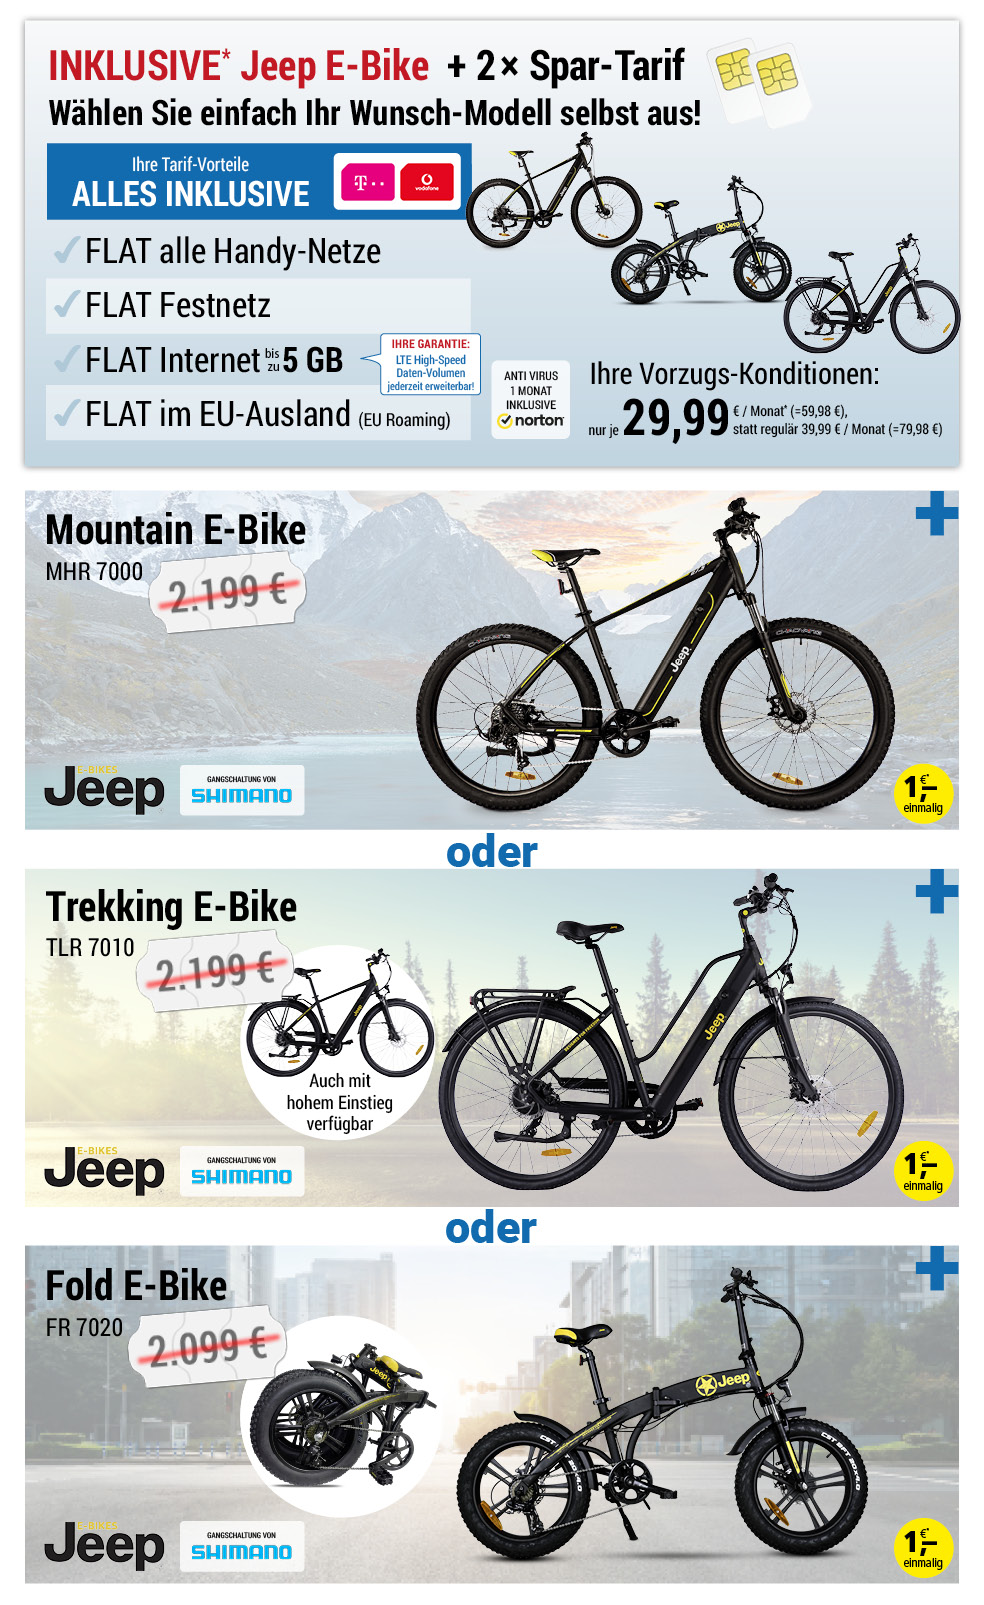 Für nur 1 €*: 2× SIM only, ALL NET SPAR-Tarif für je 29,99 € pro Monat, wählen Sie Ihr Jeep E-Bike Modell selbst aus